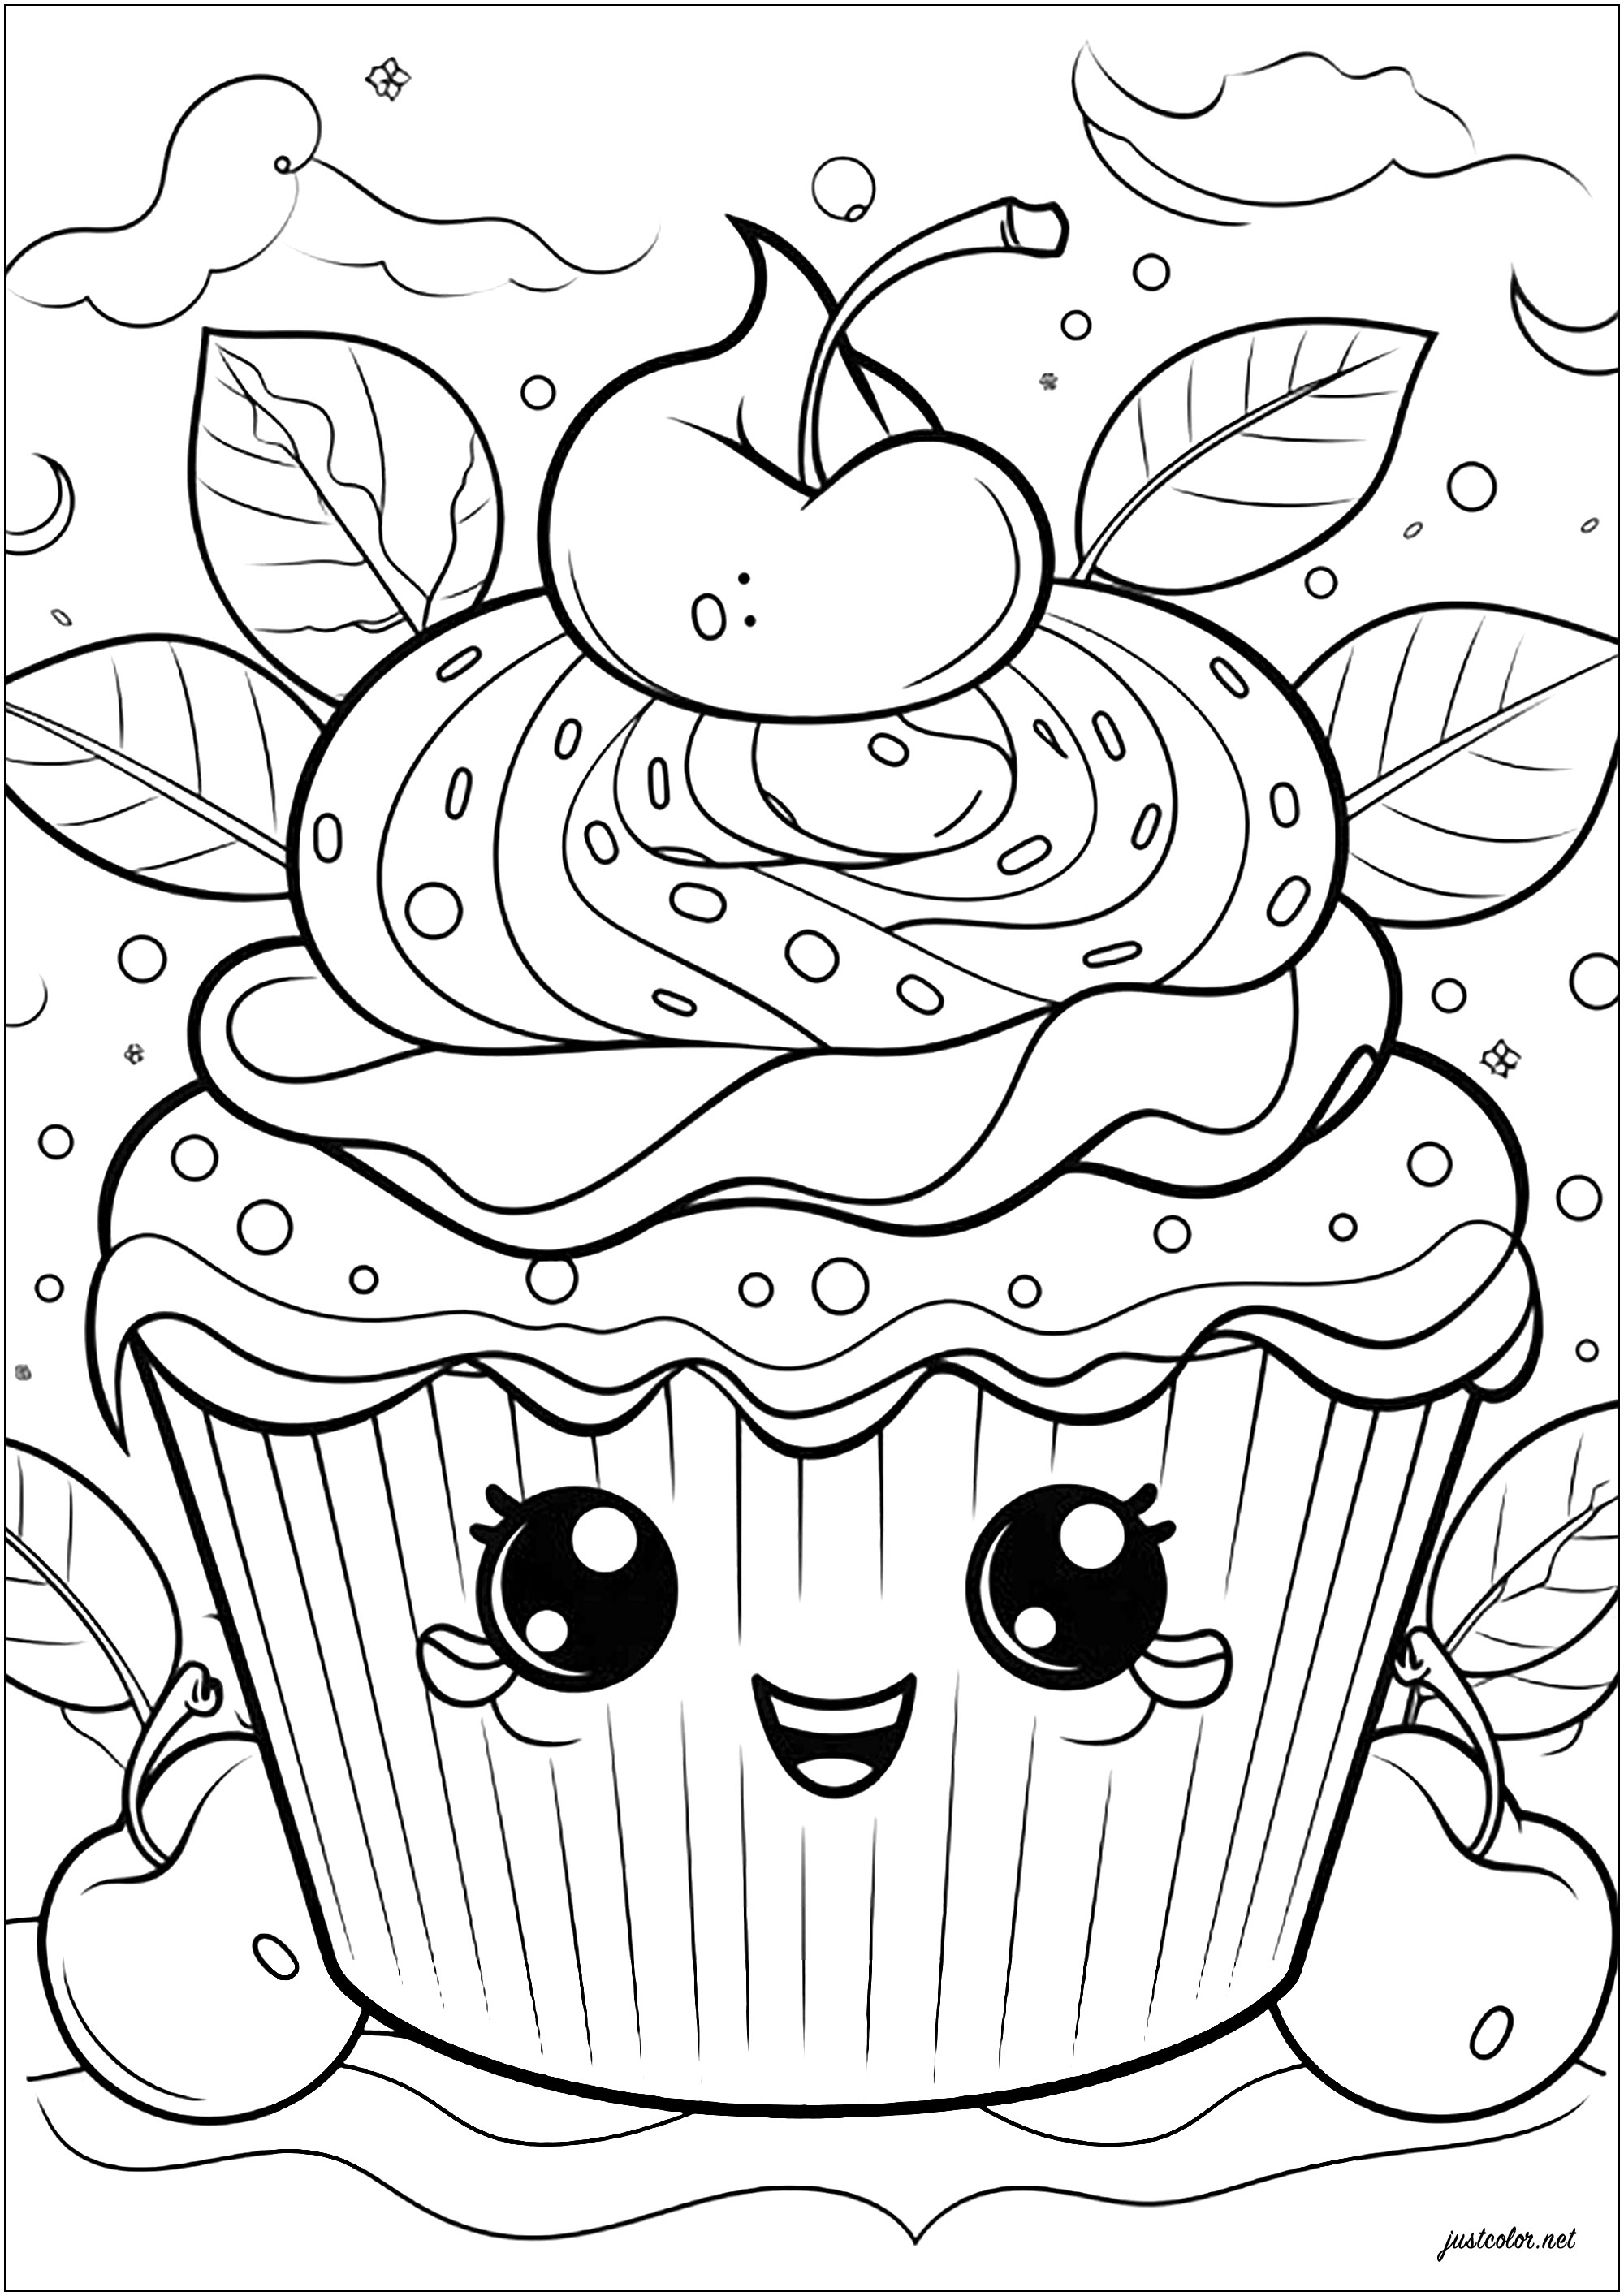 Süßer Cupcake mit Kirschen. Viele schöne Details zum Ausmalen